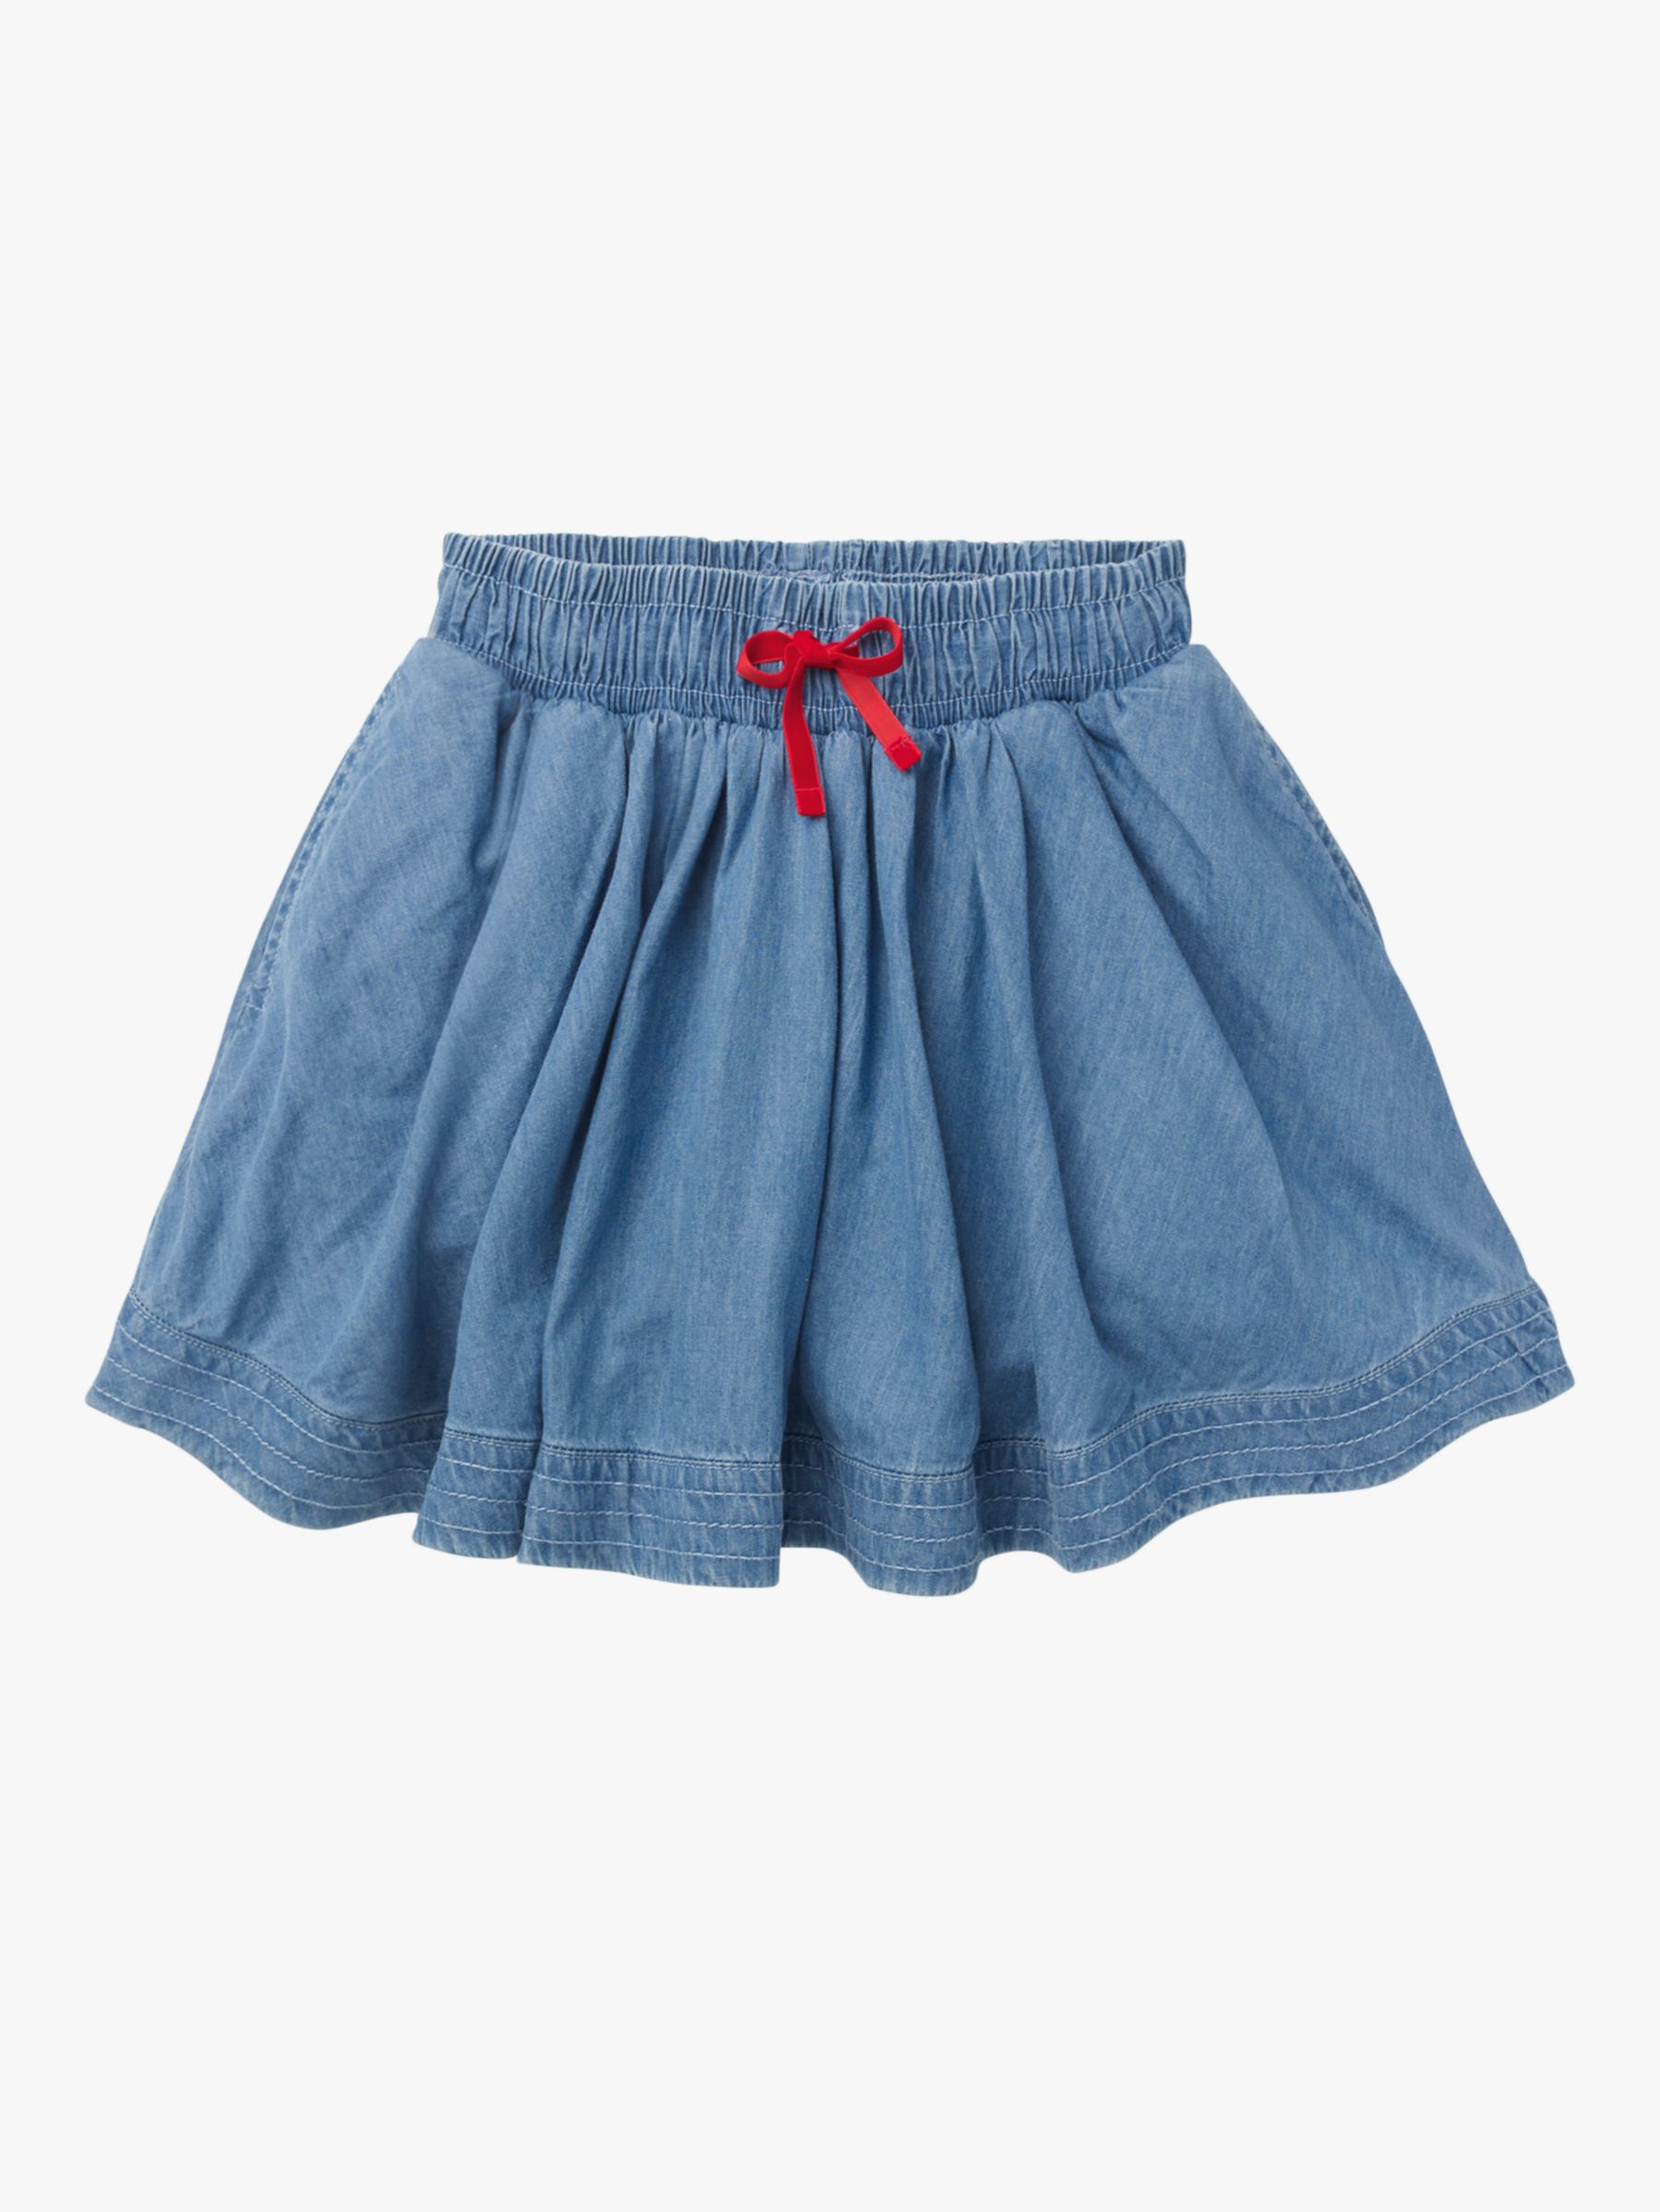 Mini Boden Girls' Woven Twirly Skirt, Light Vintage Denim at John Lewis ...